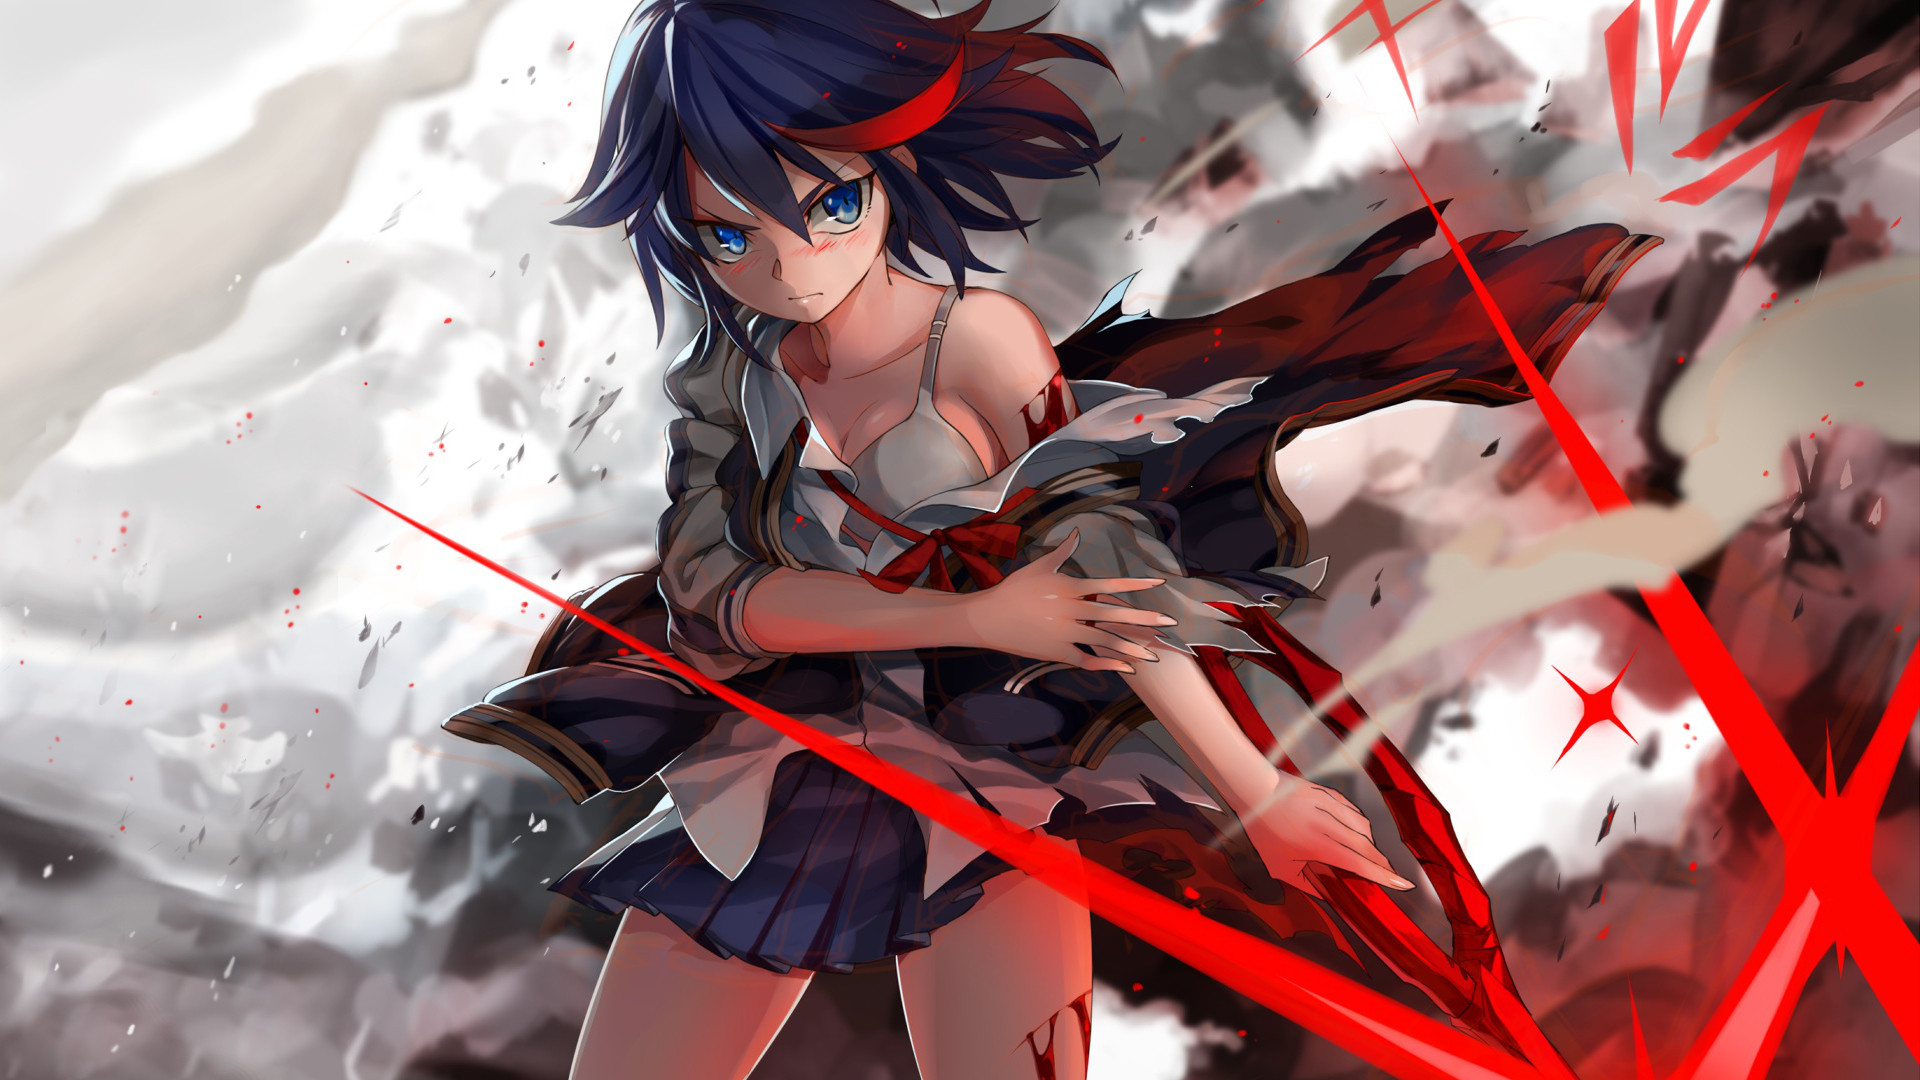 Fighter Girl Anime Wallpaper